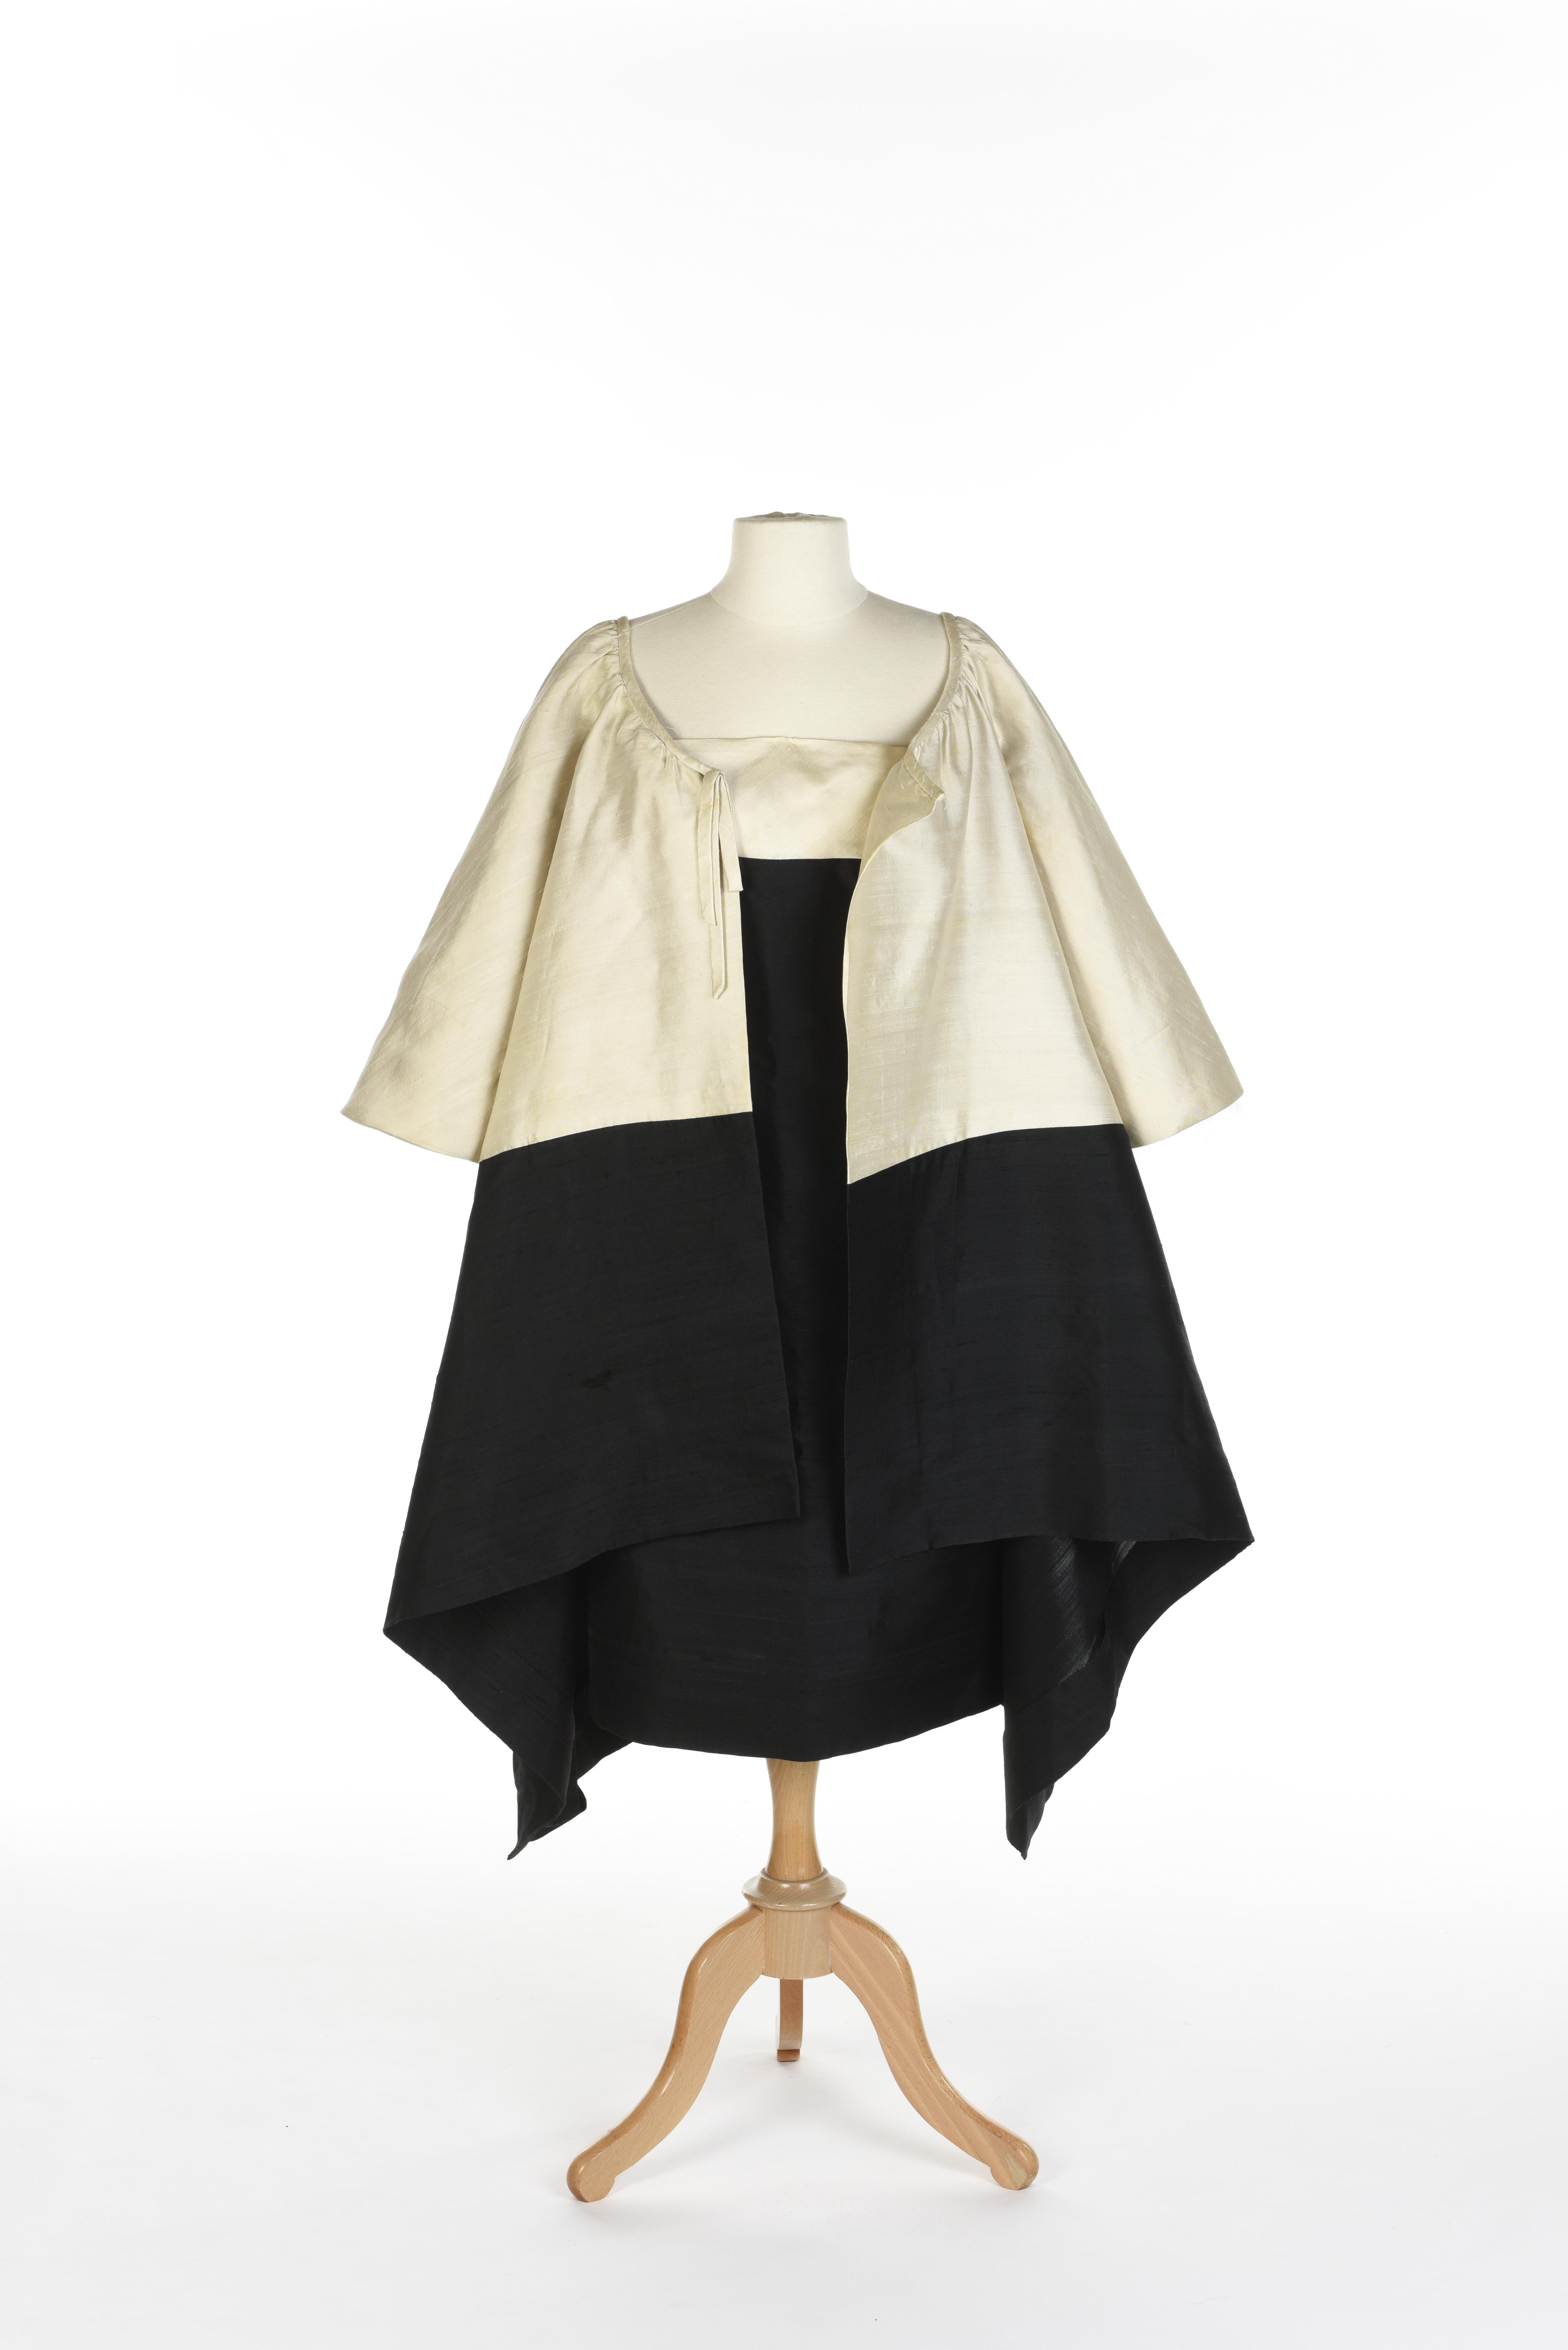 Ensemble de soirée Hubert de Givenchy Couture française en soie crème et noire Circa 1965 en vente 12